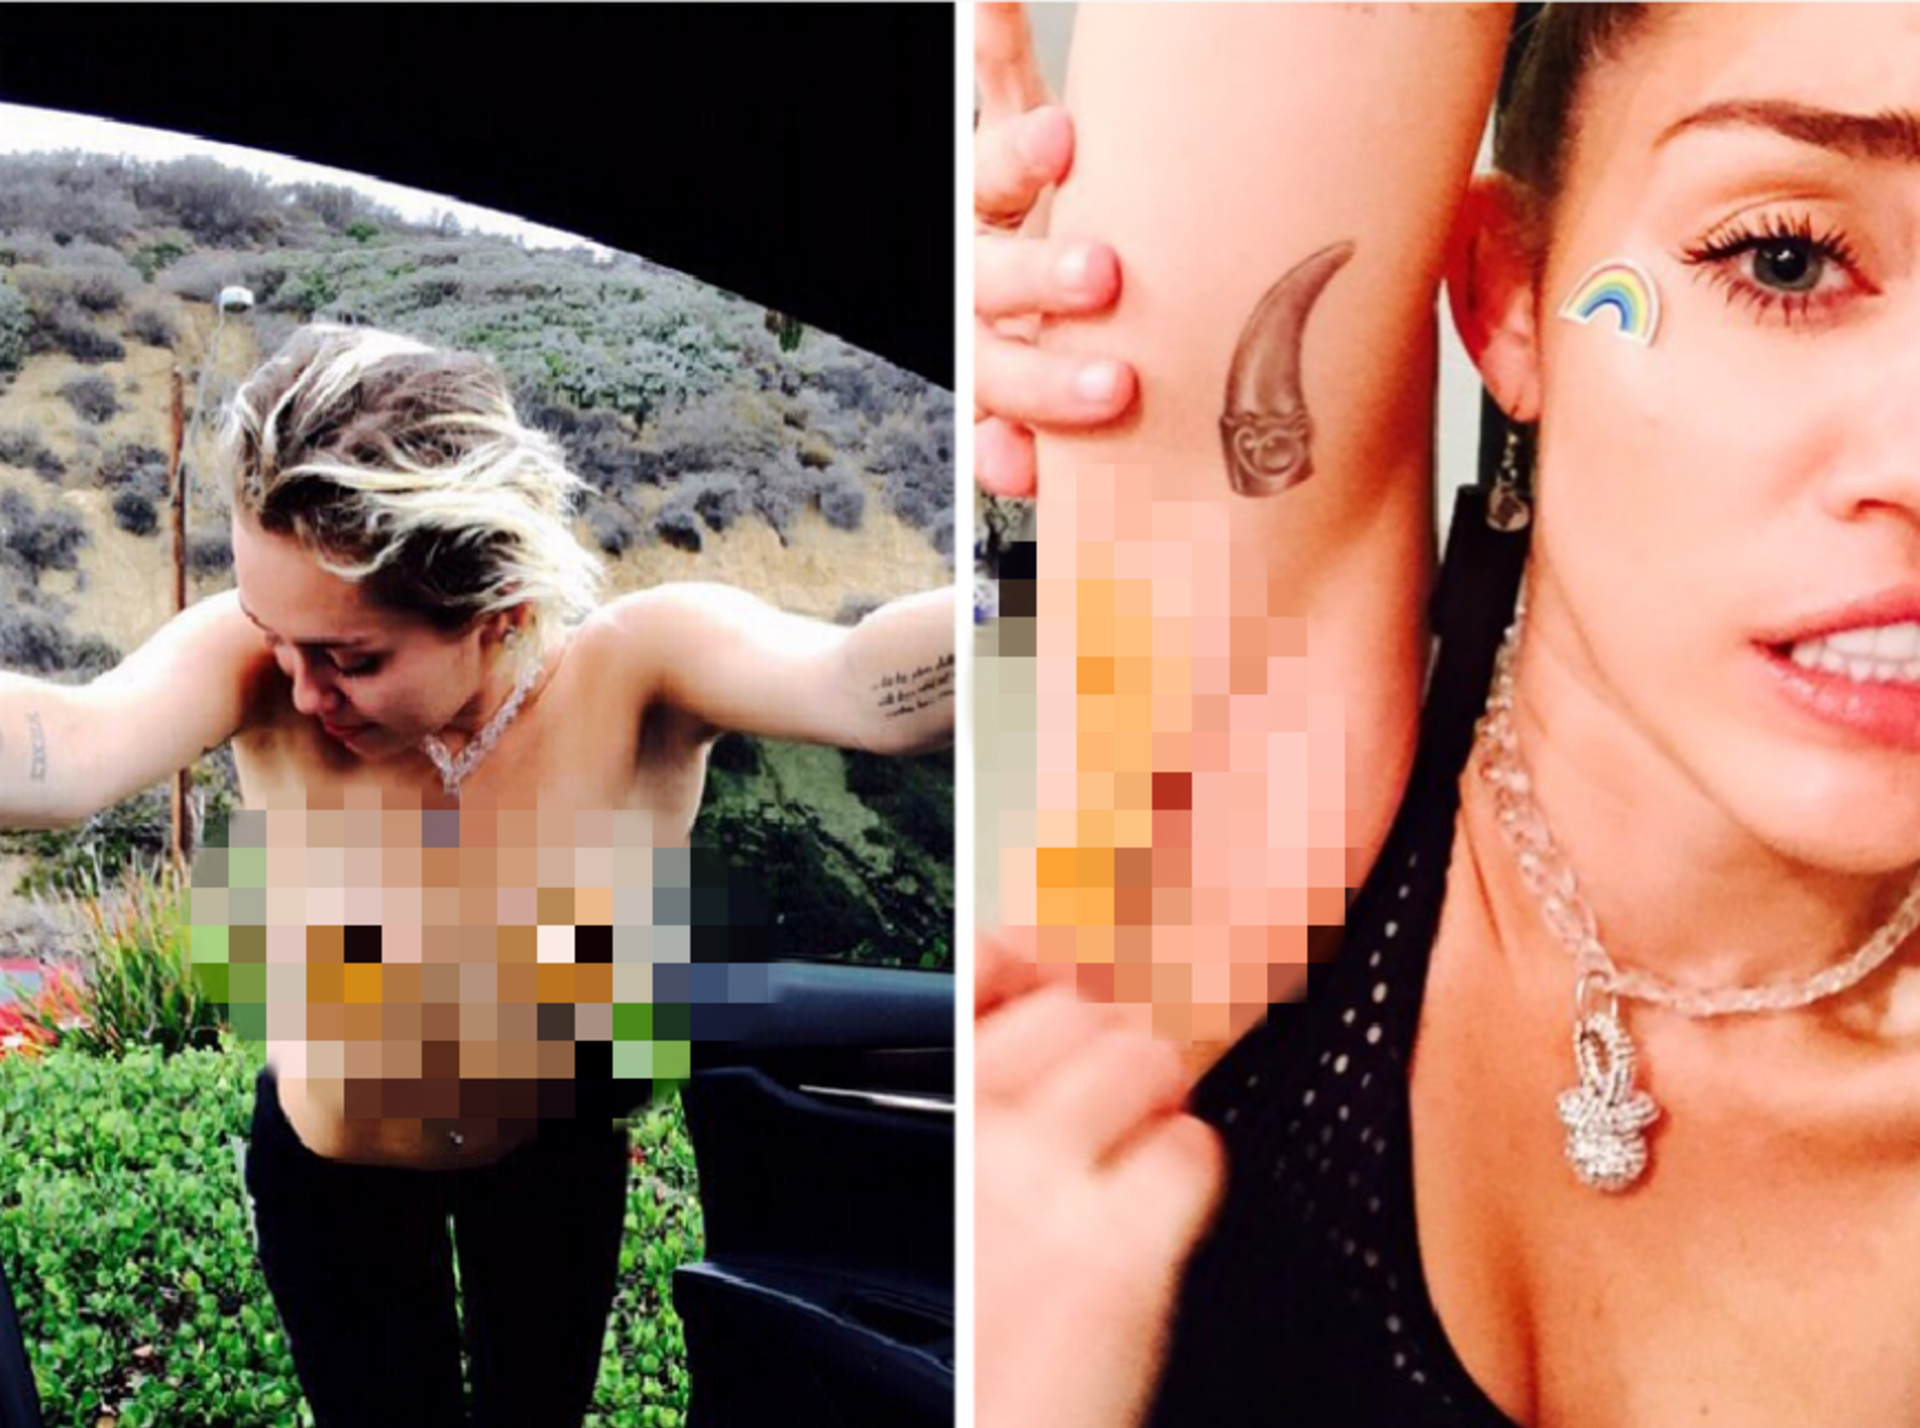 Miley svoje tělo ukazuje pořád, za jakýchkoli okolností.